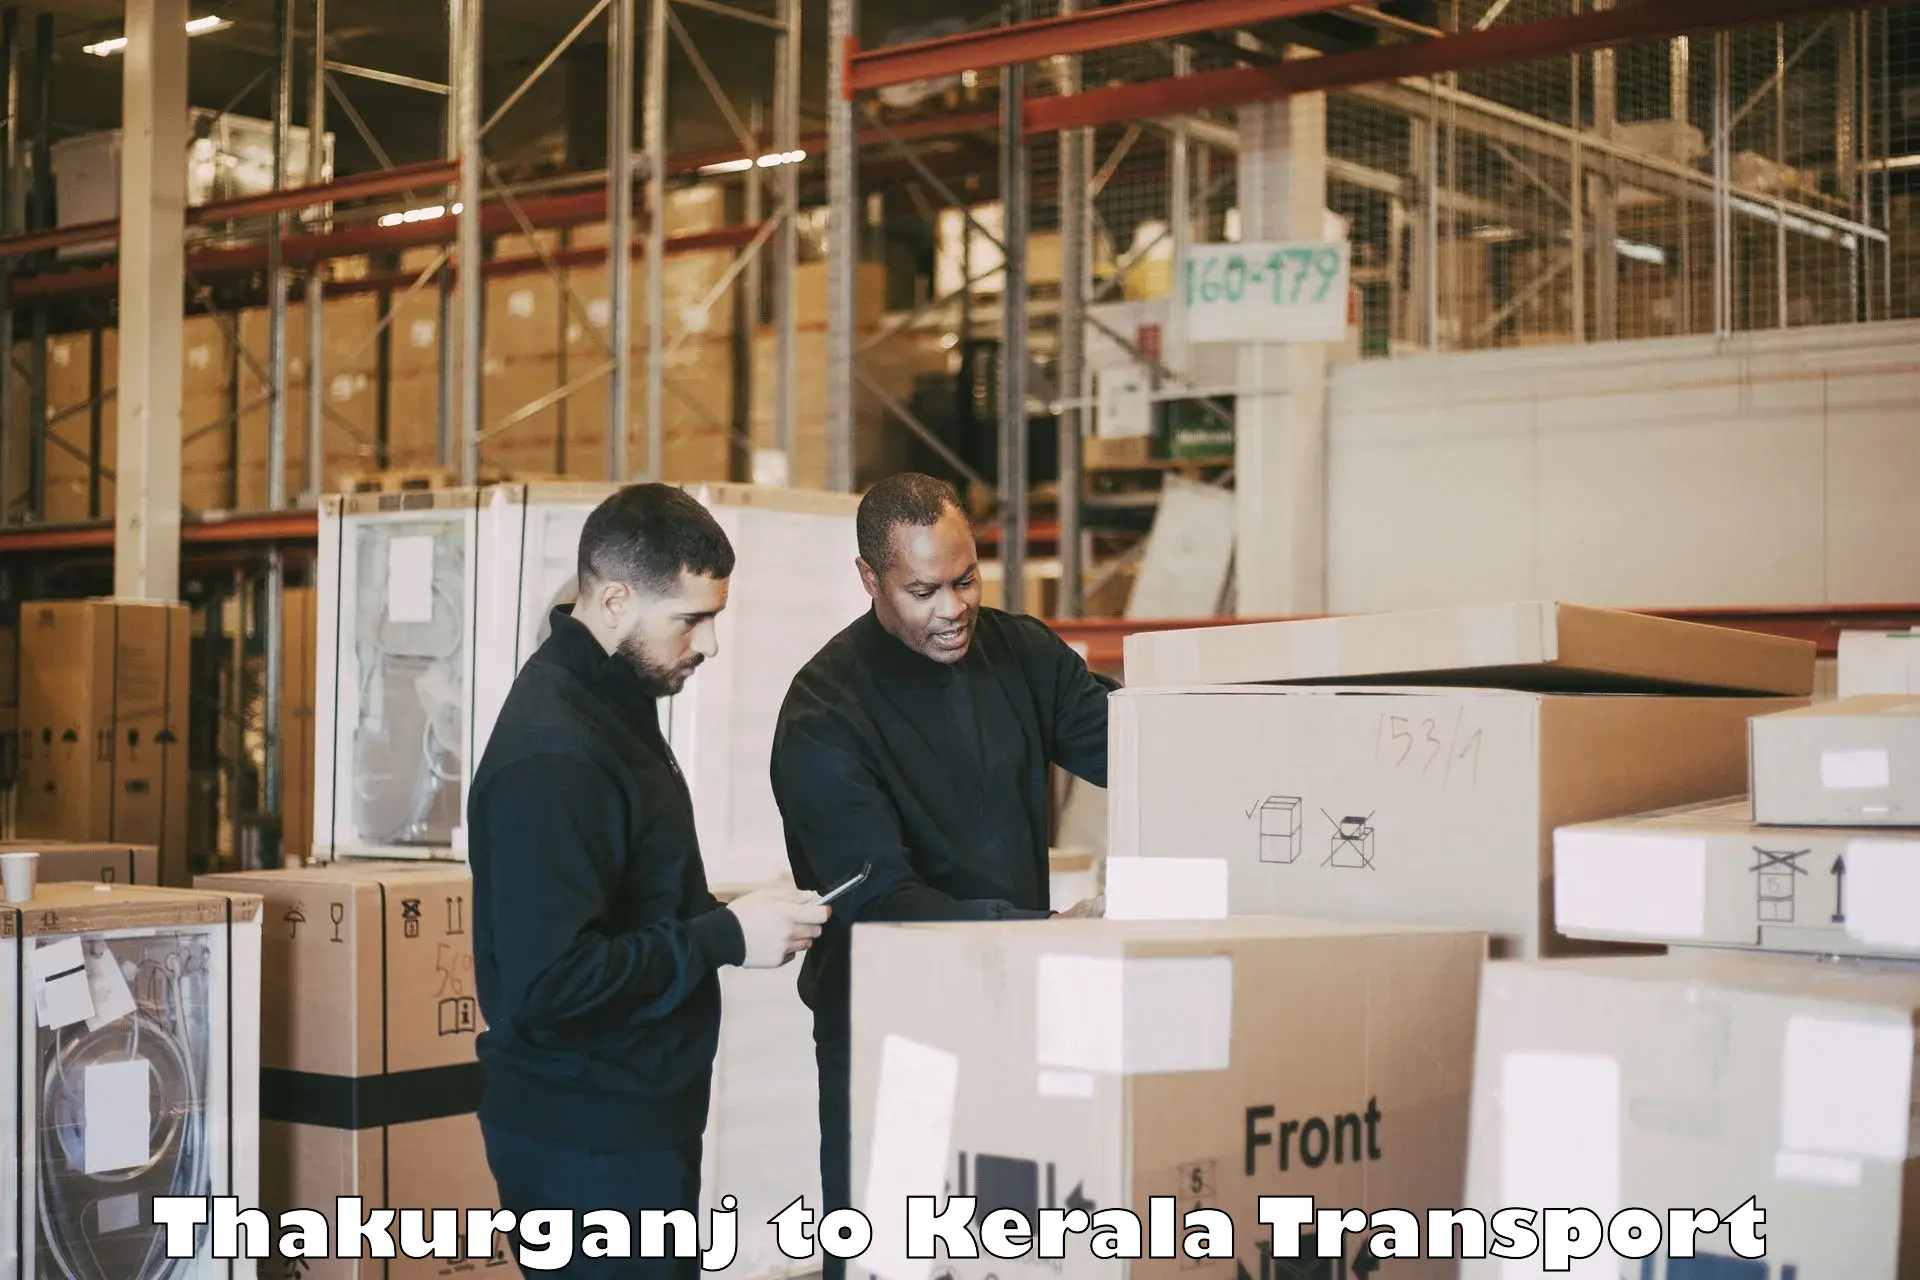 Furniture transport service Thakurganj to Kerala